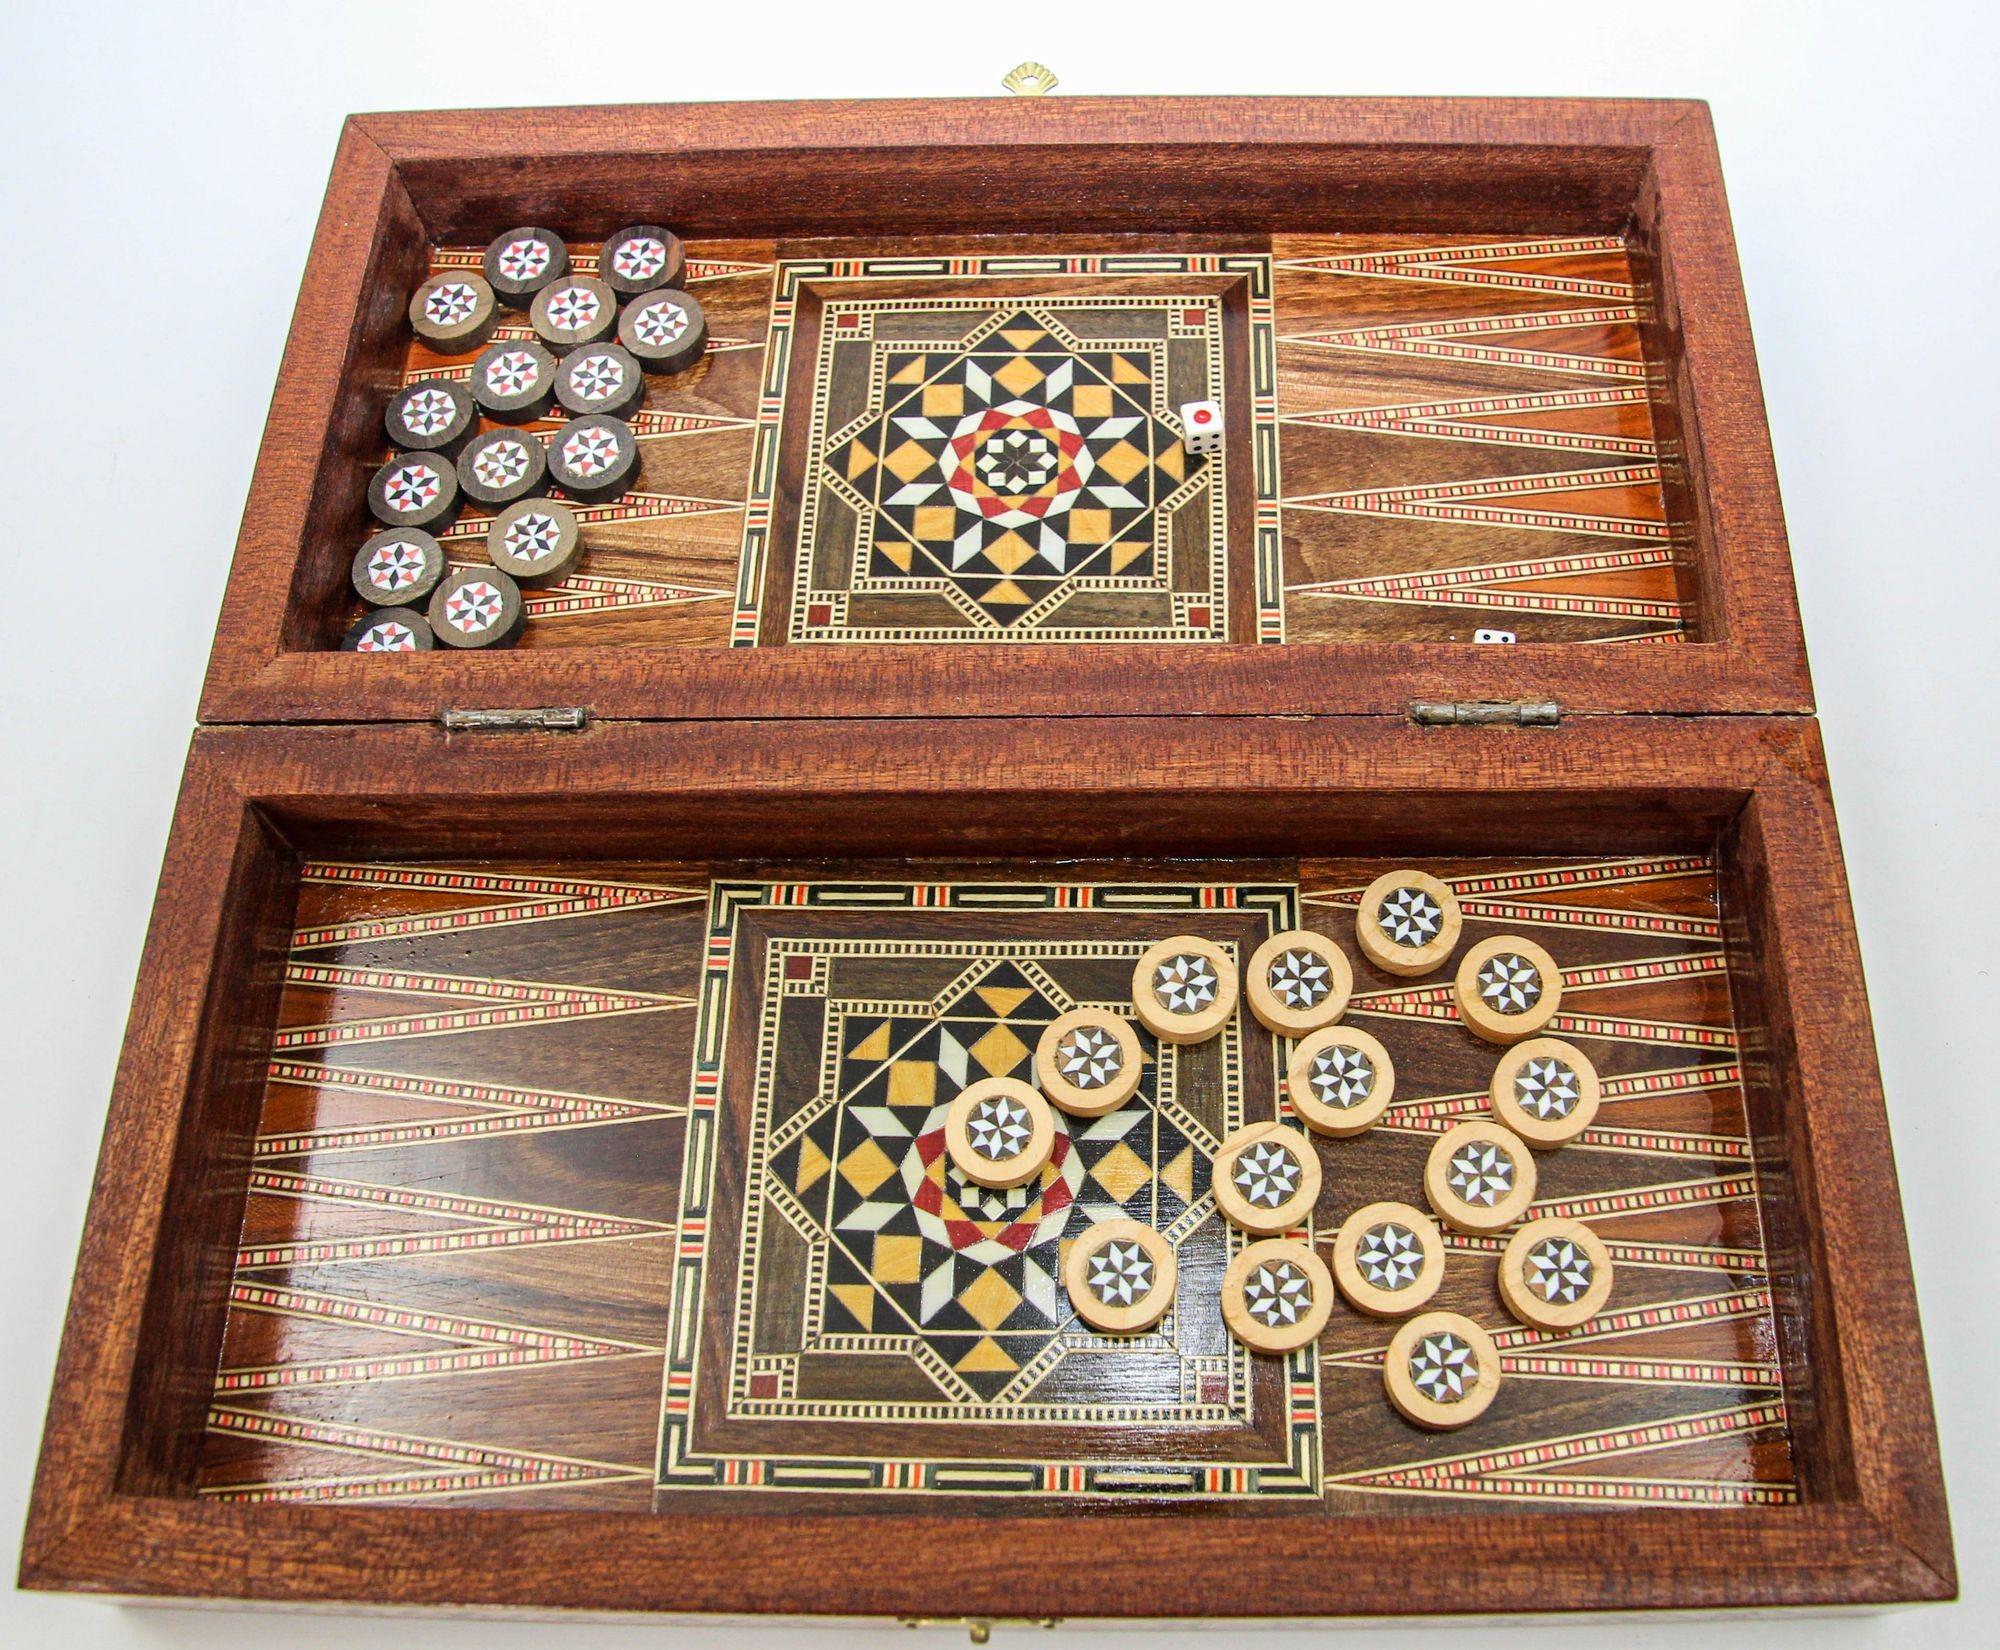 Boîte de jeu de backgammon en bois incrusté de micro-mosaïques du Moyen-Orient.
Grande boîte de jeu de backgammon et d'échecs vintage de style mauresque syrien en micro-mosaïque incrustée de marqueterie de mosaïque.
L'incroyable savoir-faire de la